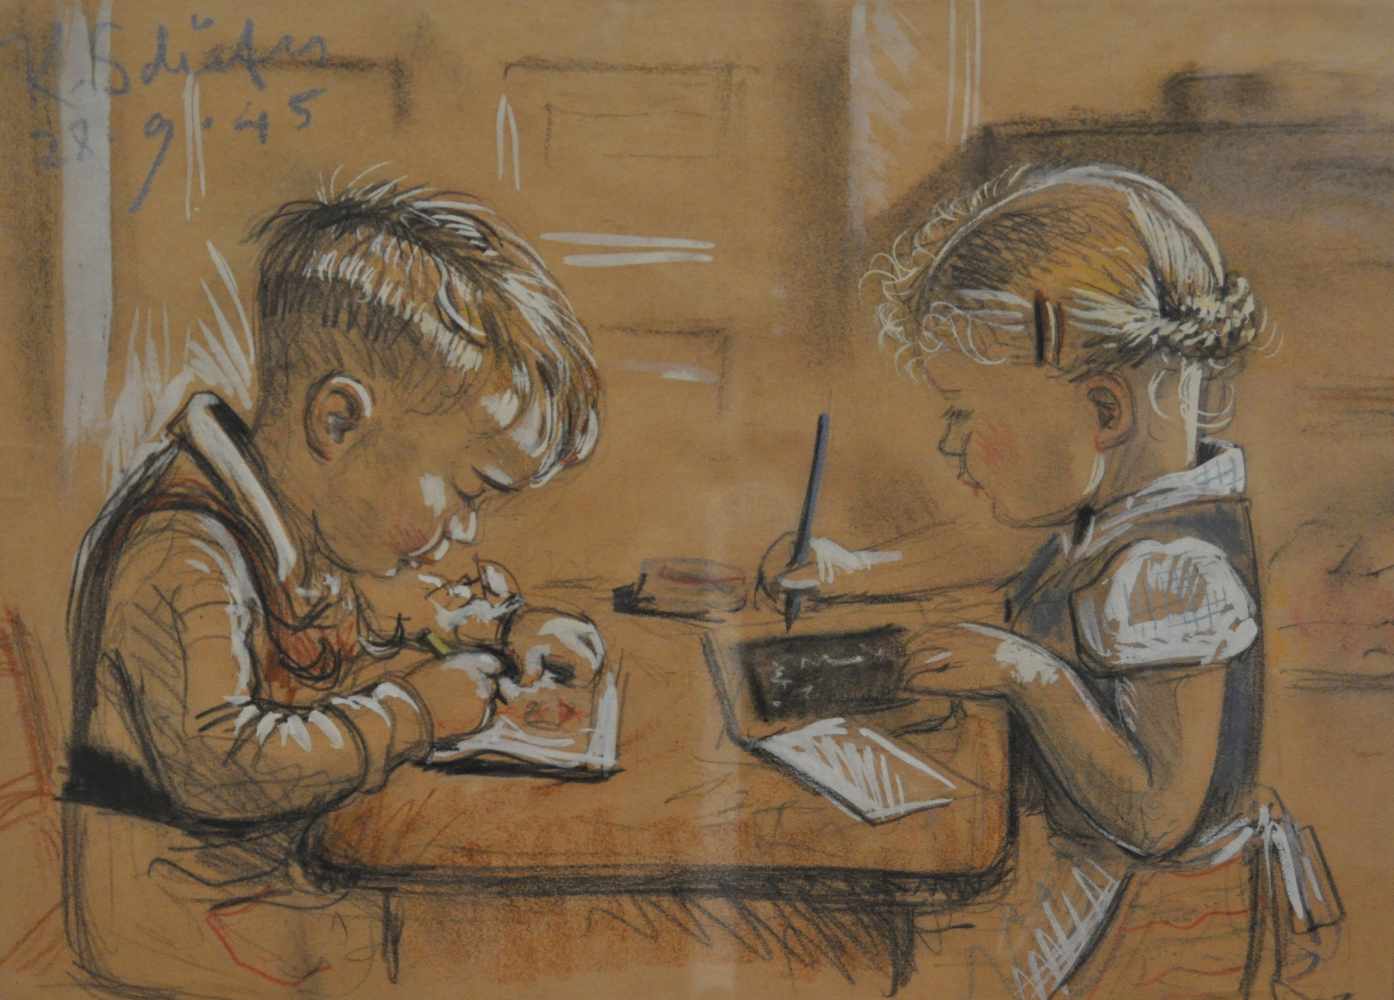 Schäfer, Karl Erich (1905 - 1982), 295. Schäfer, Karl Erich (1905 - 1982), "Kinder beim Lernen",